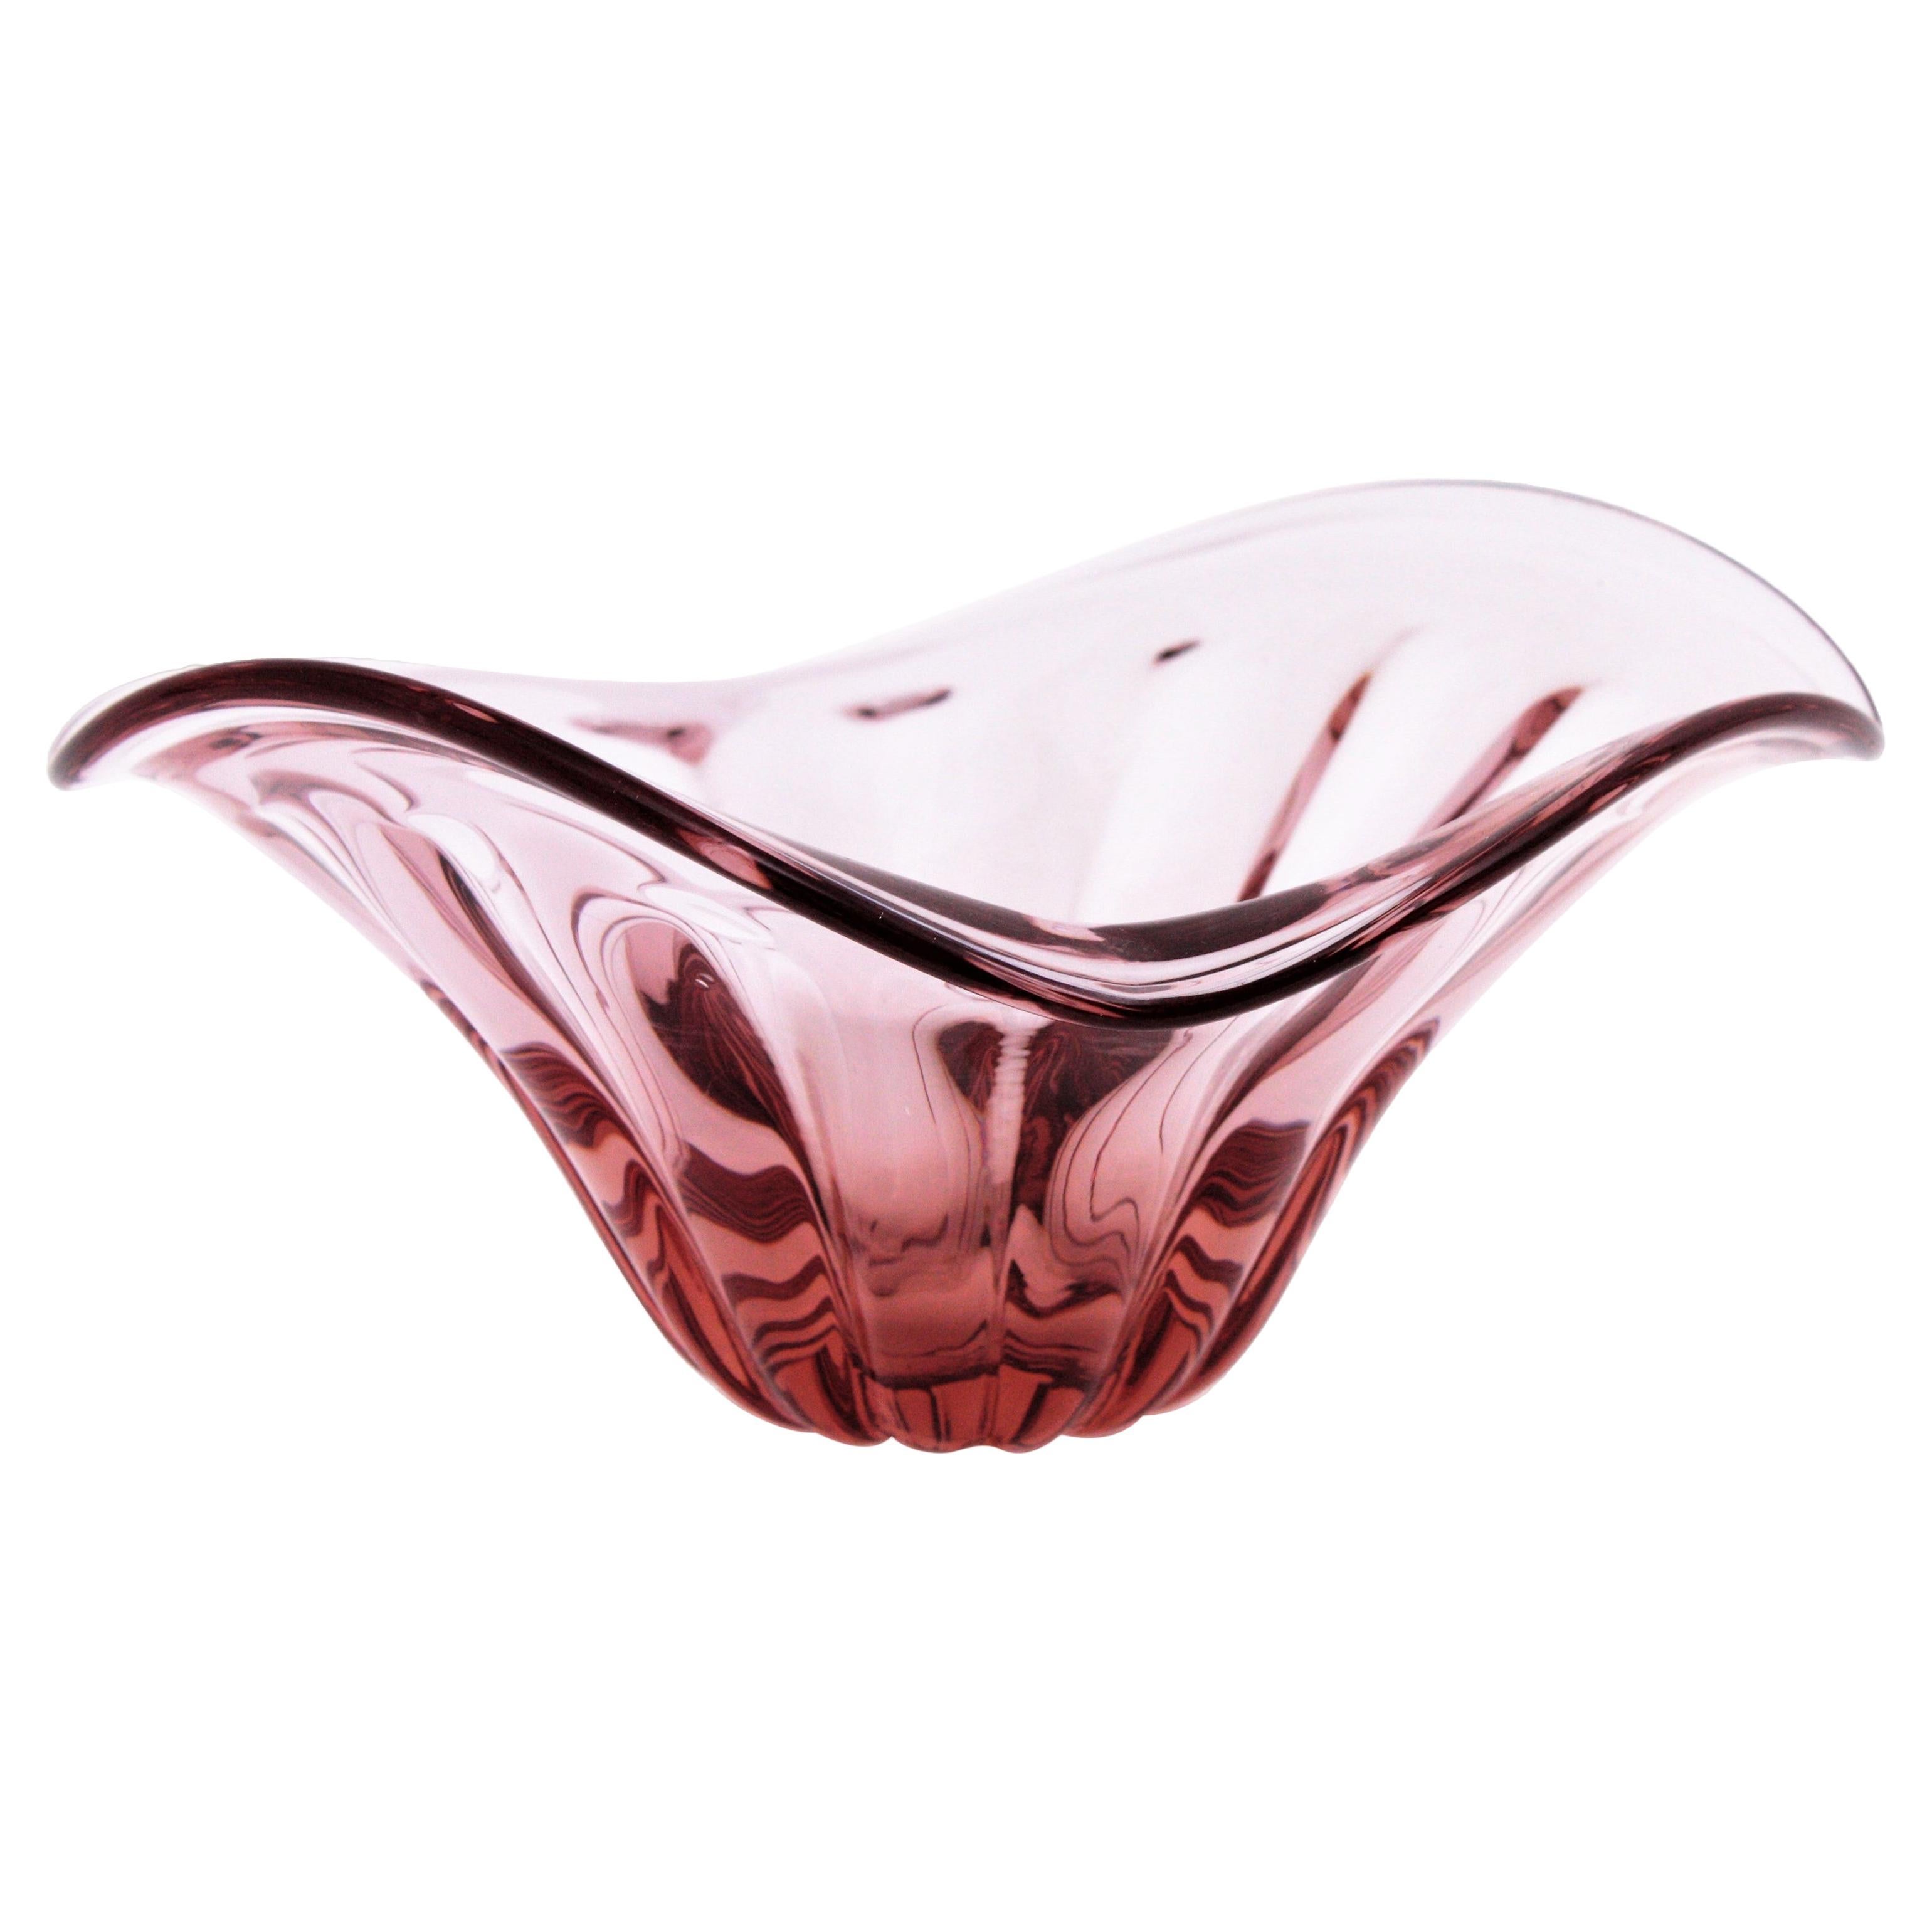 Alfredo Barbini Murano Pink Sommerso Geripptes Glas Tafelaufsatz Schale, 1950er Jahre